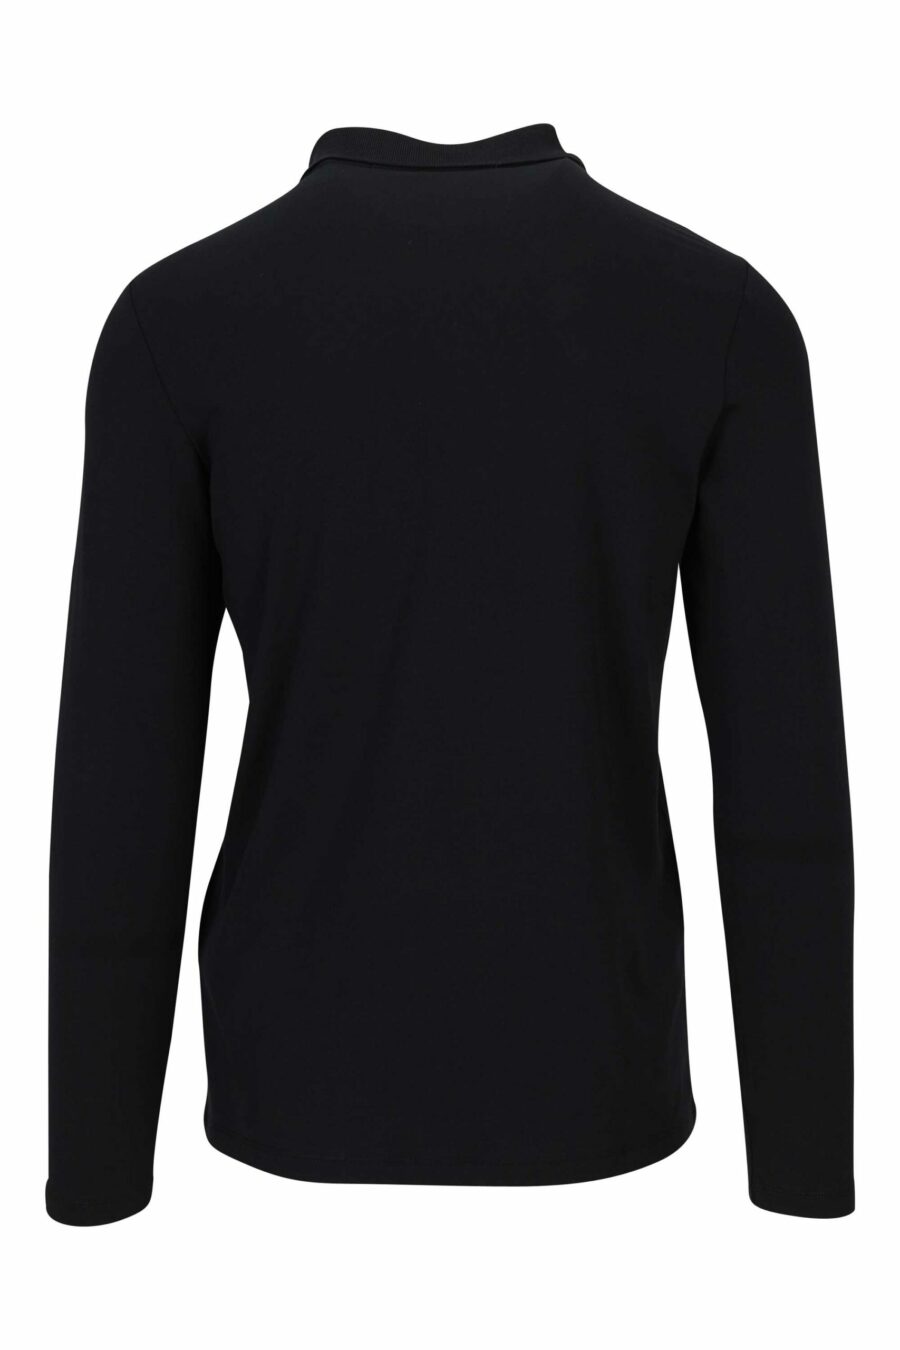 Langärmeliges schwarzes Poloshirt mit Tasche - 4062226690515 1 1 skaliert